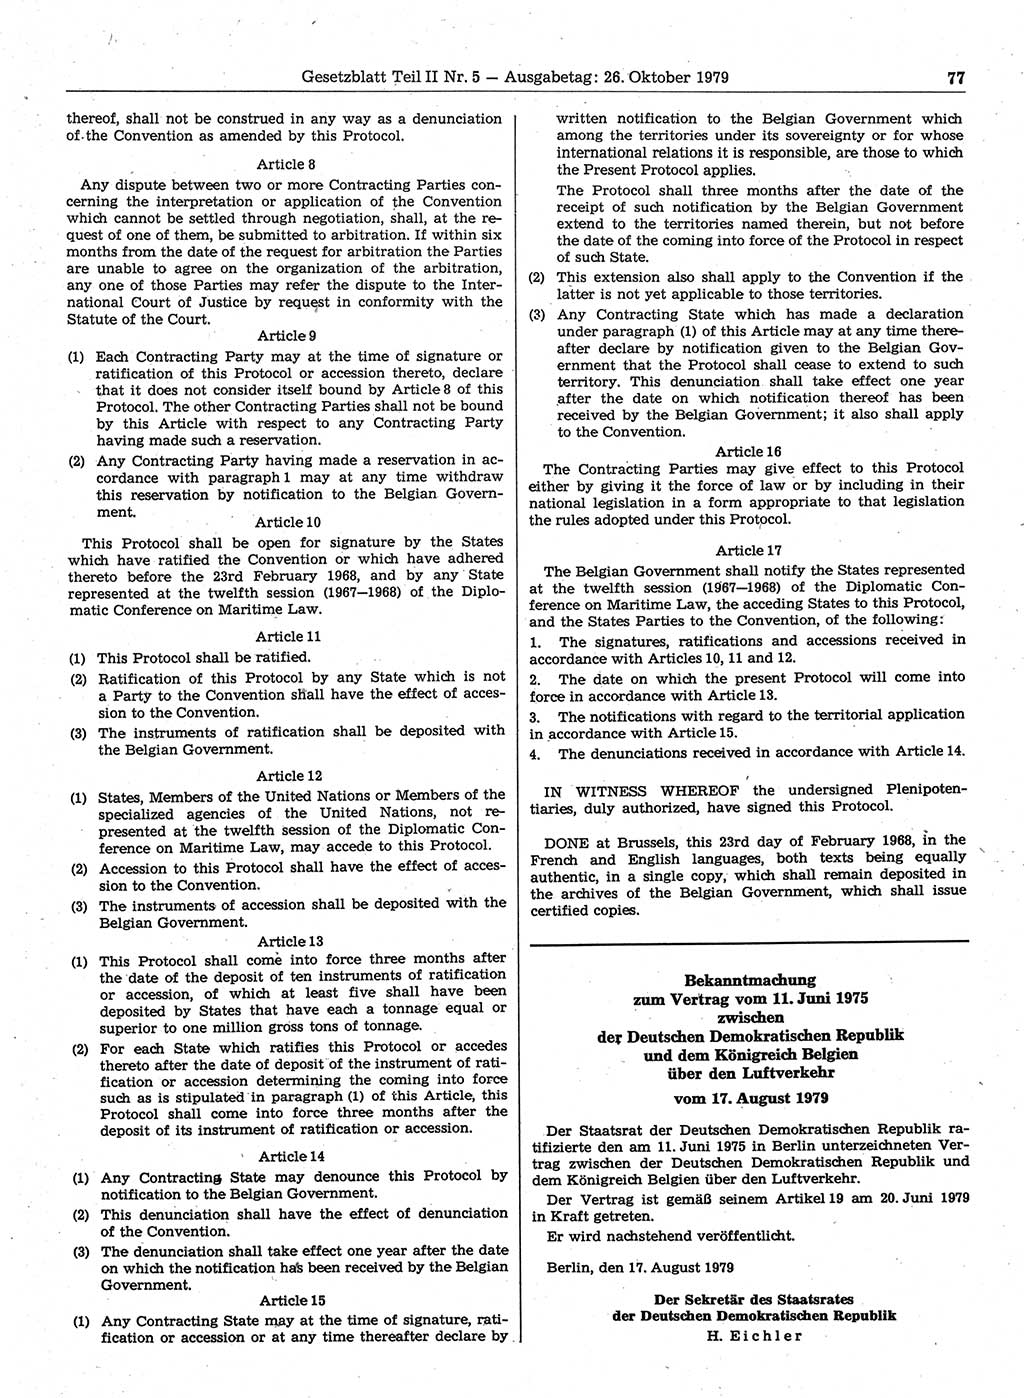 Gesetzblatt (GBl.) der Deutschen Demokratischen Republik (DDR) Teil ⅠⅠ 1979, Seite 77 (GBl. DDR ⅠⅠ 1979, S. 77)